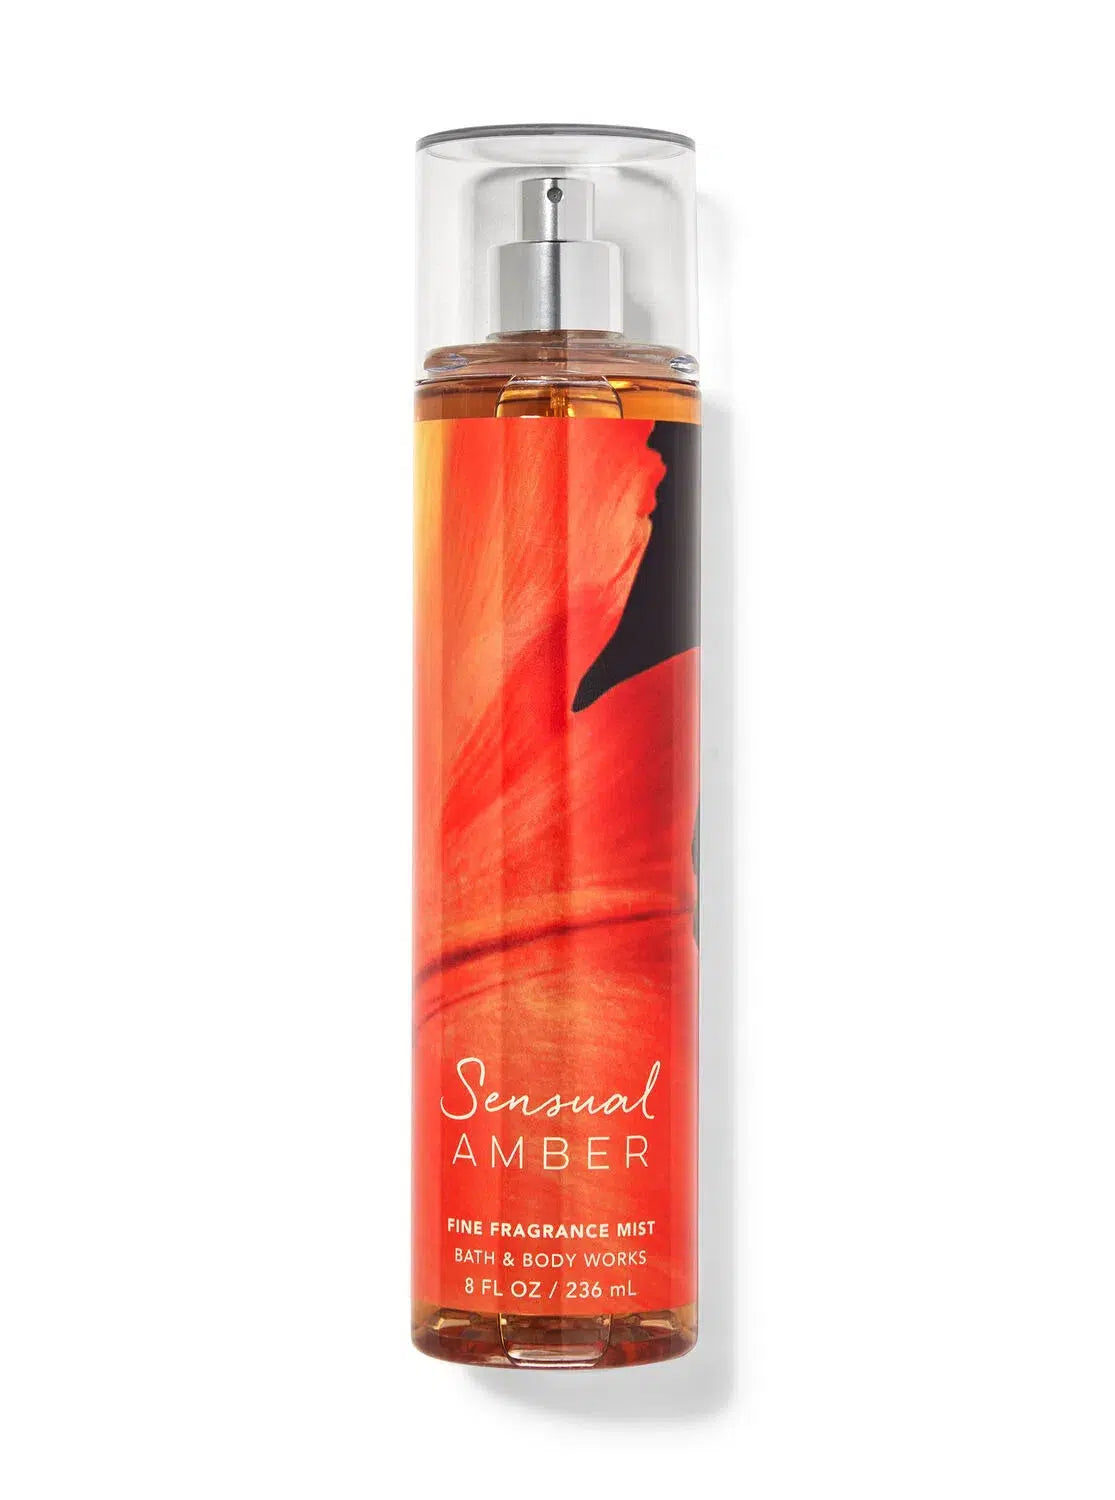 Bath & Body Works Sensual Amber Fragrance Mist 236ml